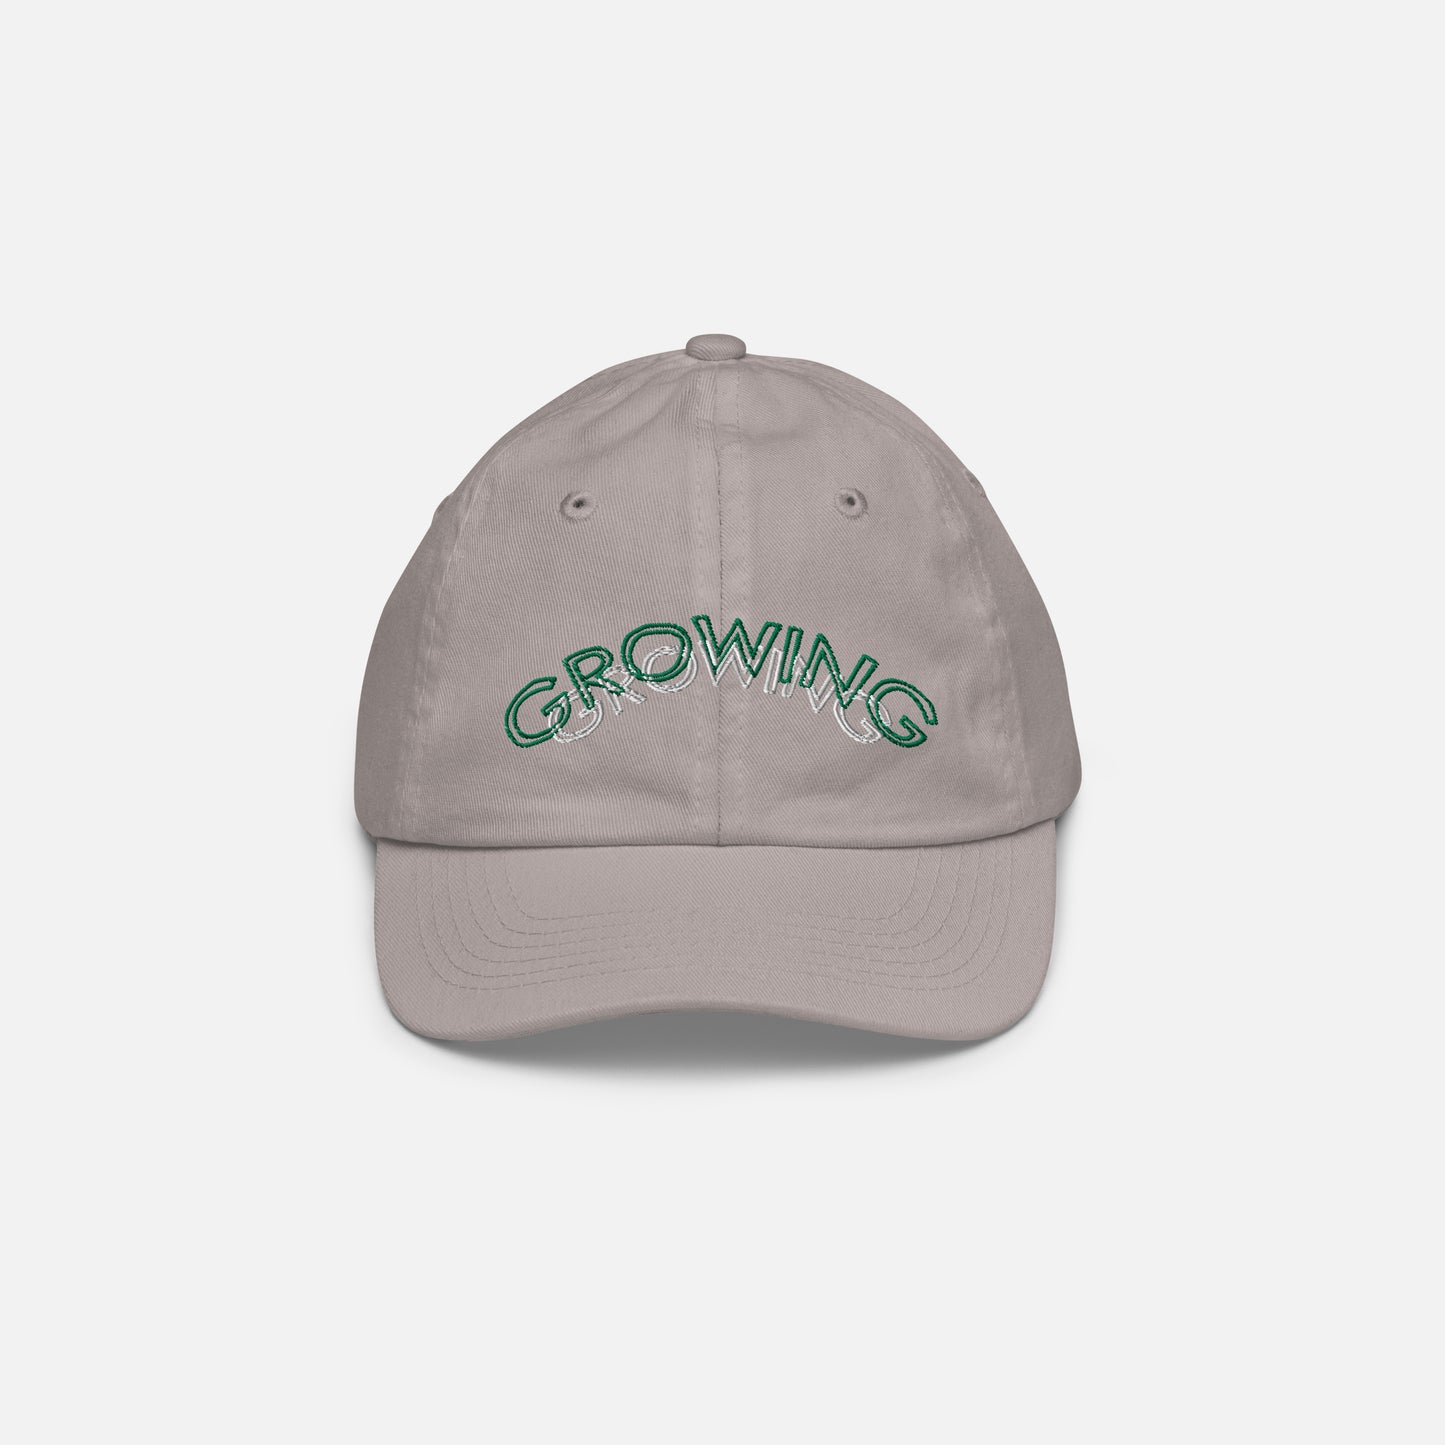 Growing Toddler cap